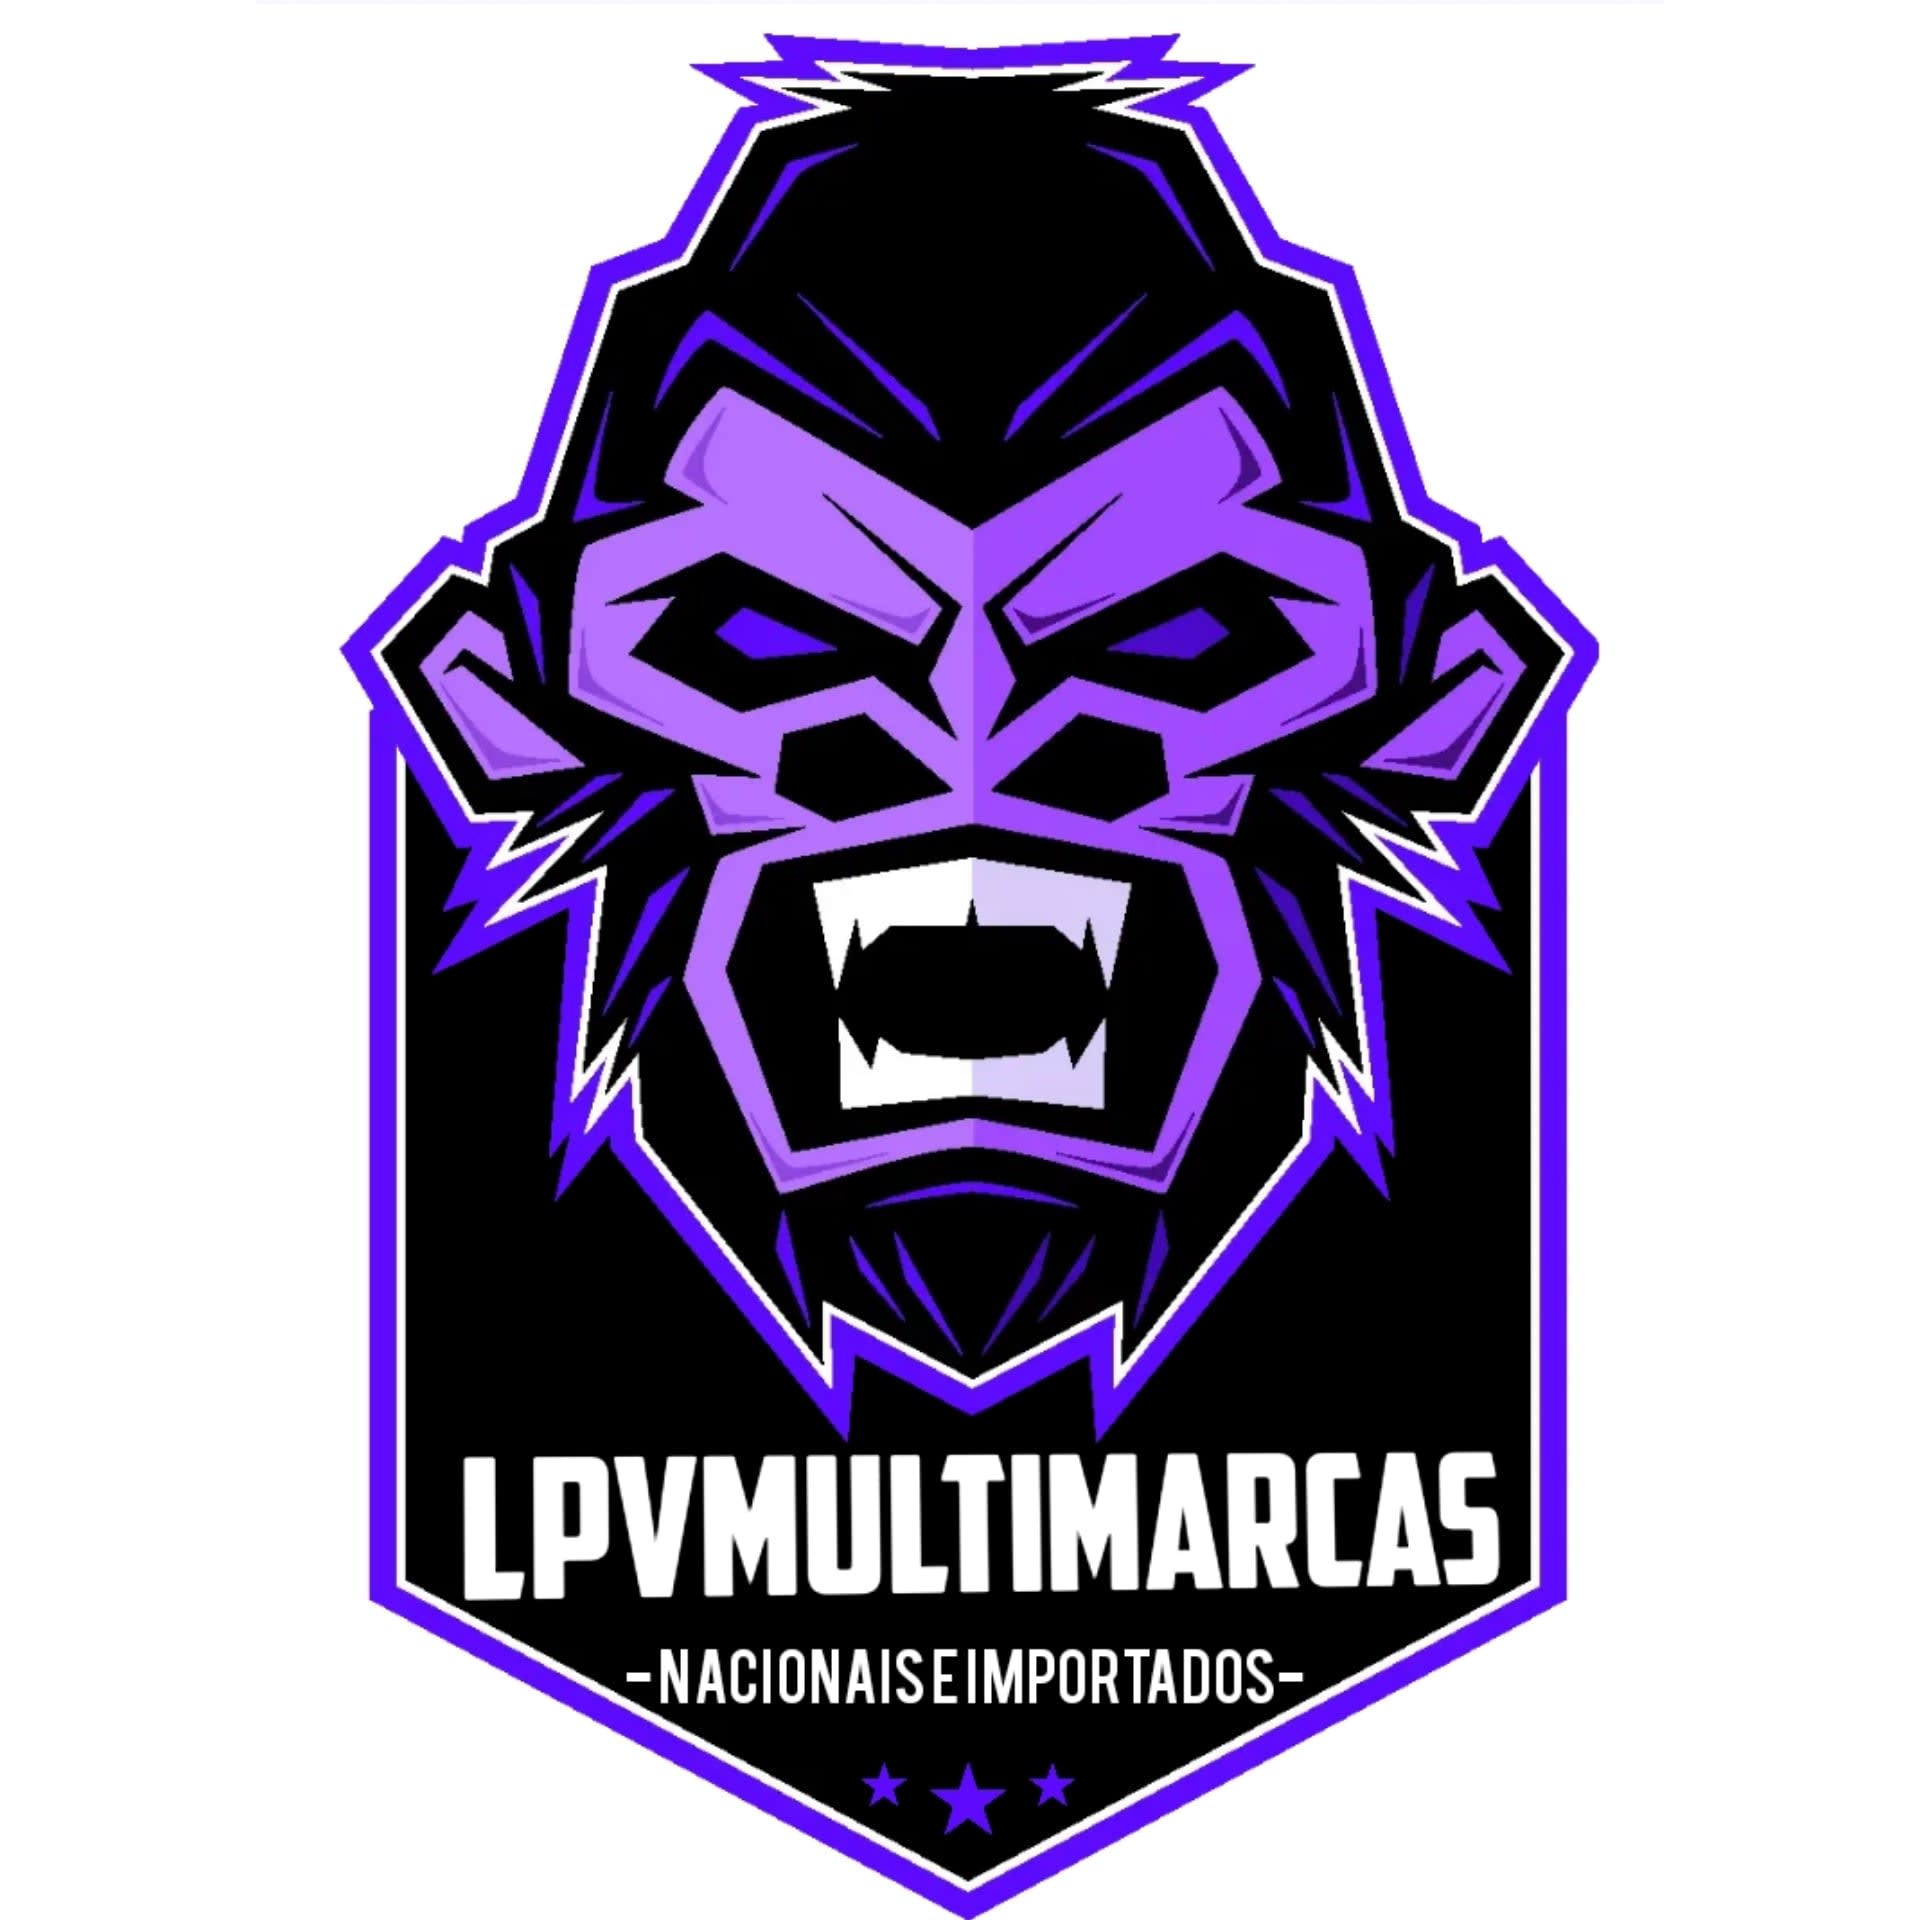 LPV Multimarcas